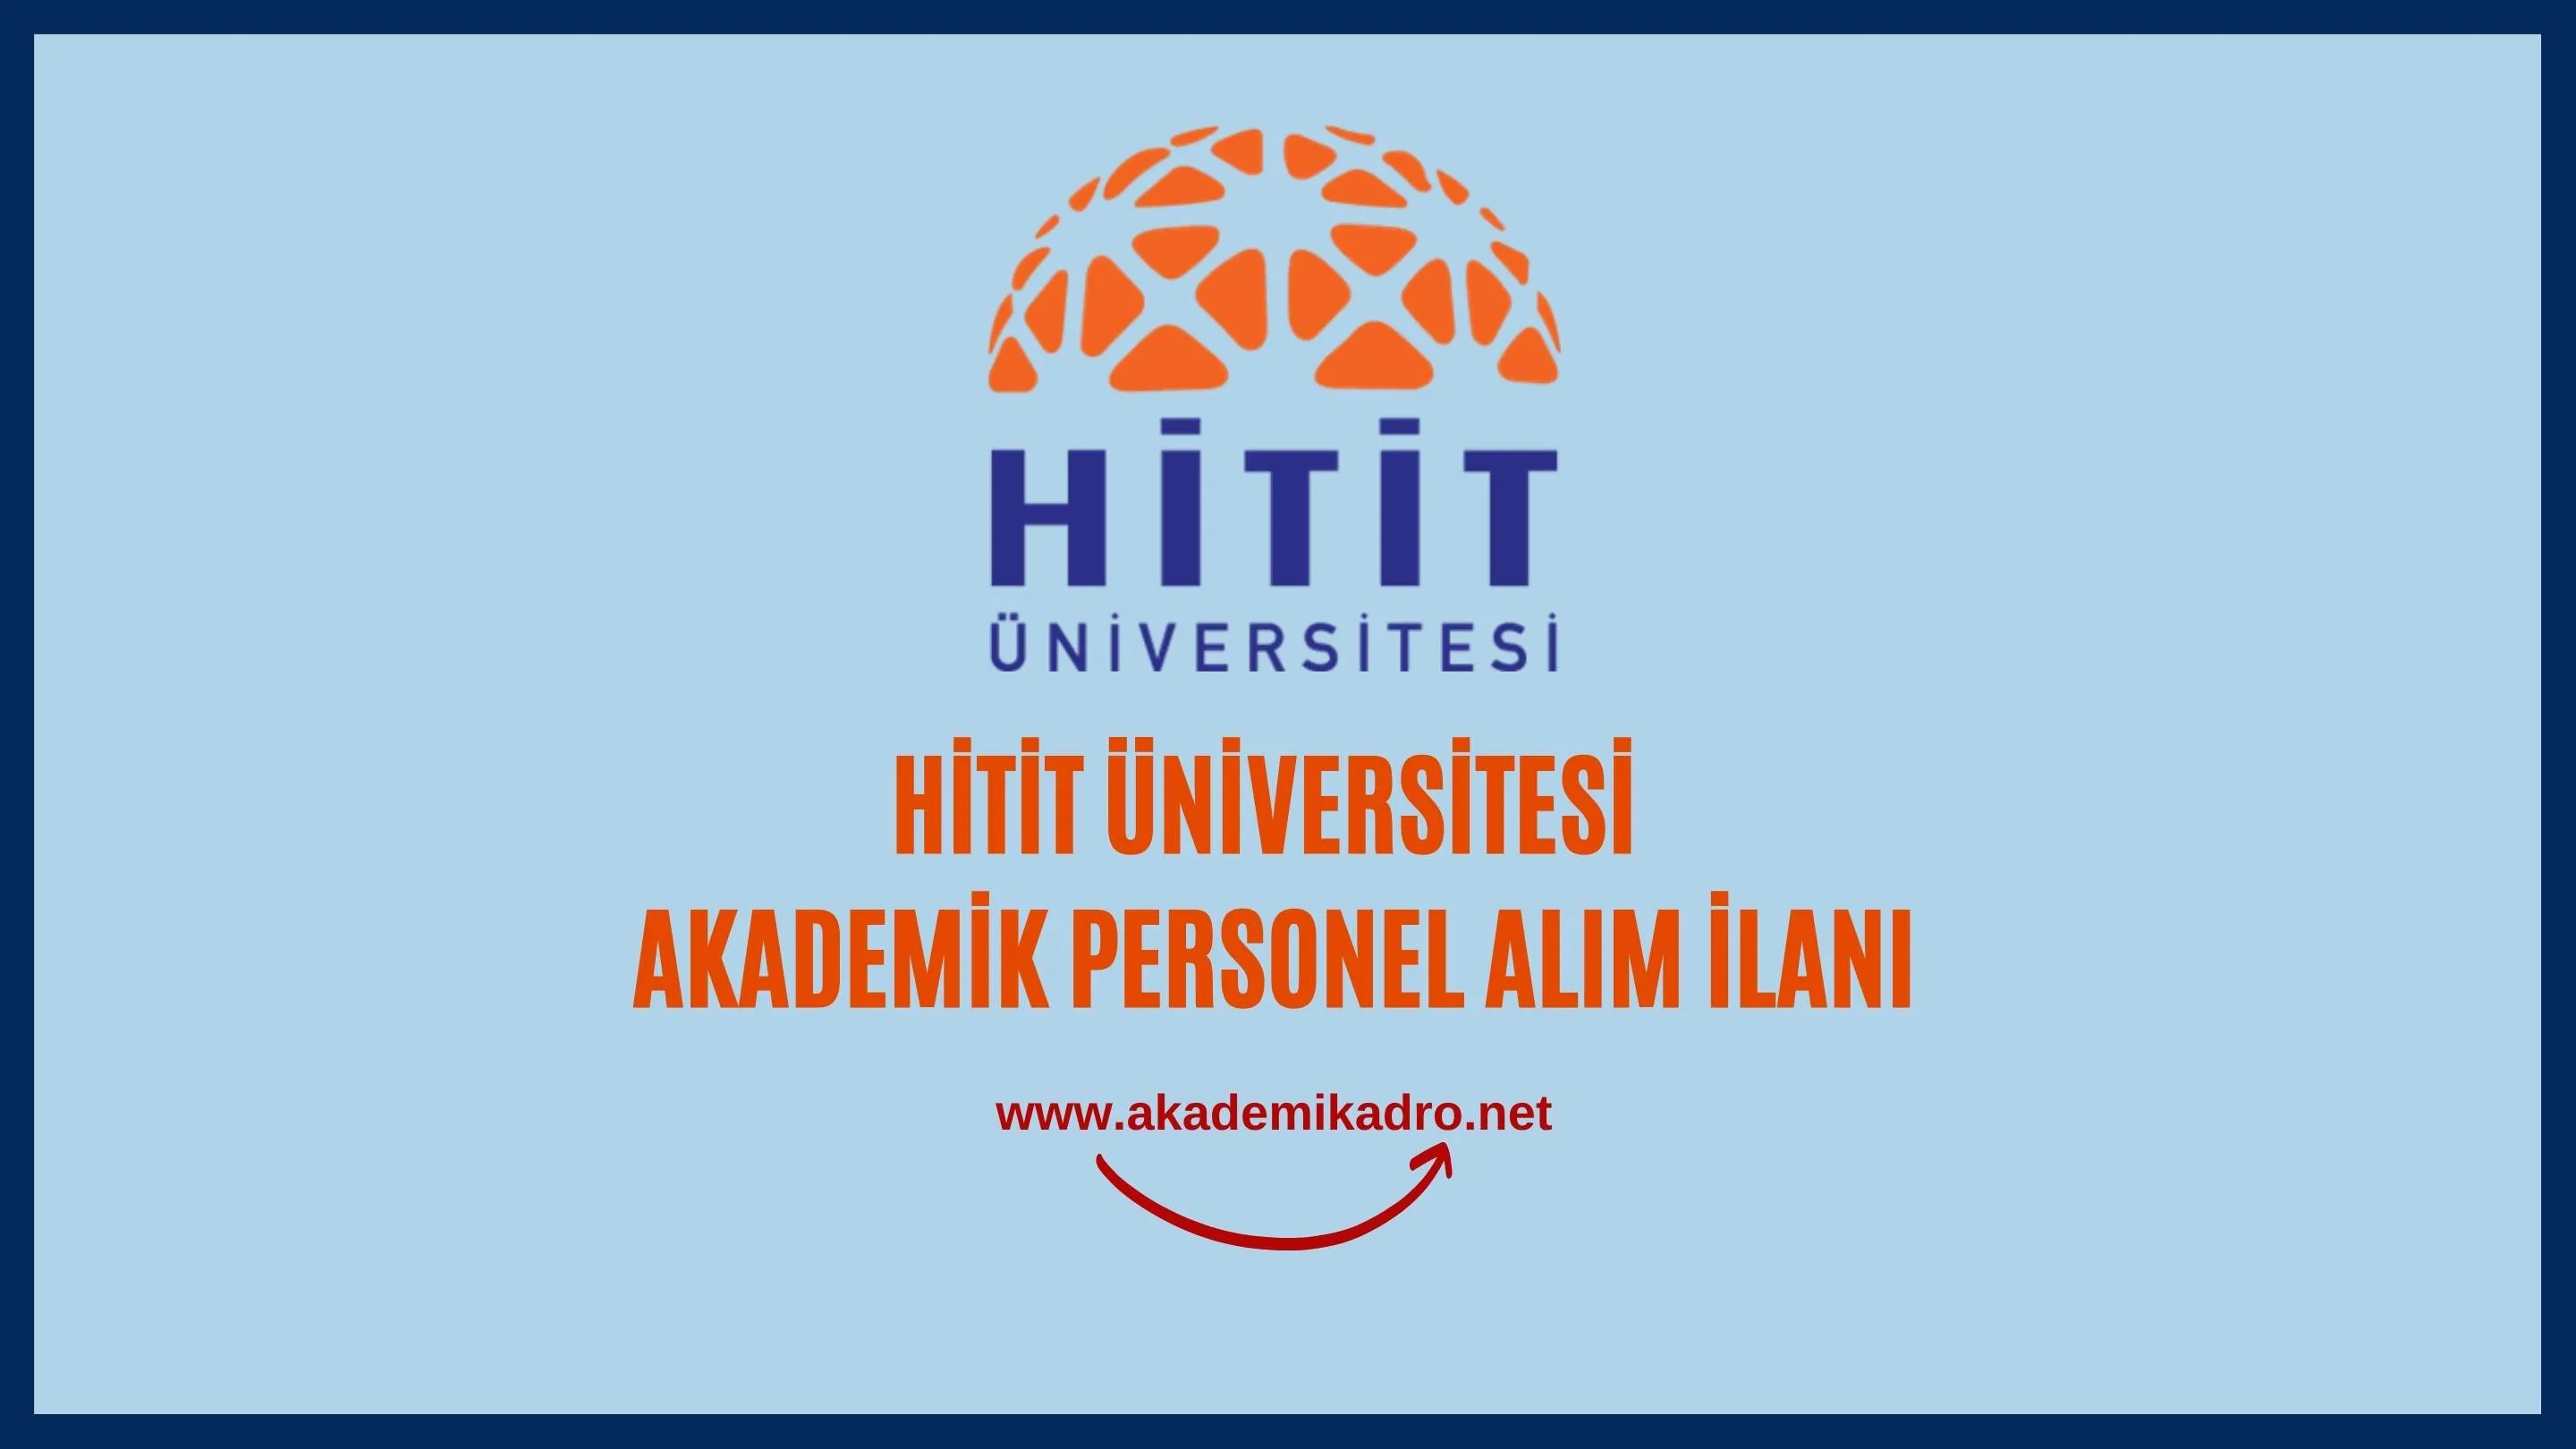 Hitit Üniversitesi birçok alandan 22 akademik personel alacak. Son başvuru tarihi 17 Ekim 2022.